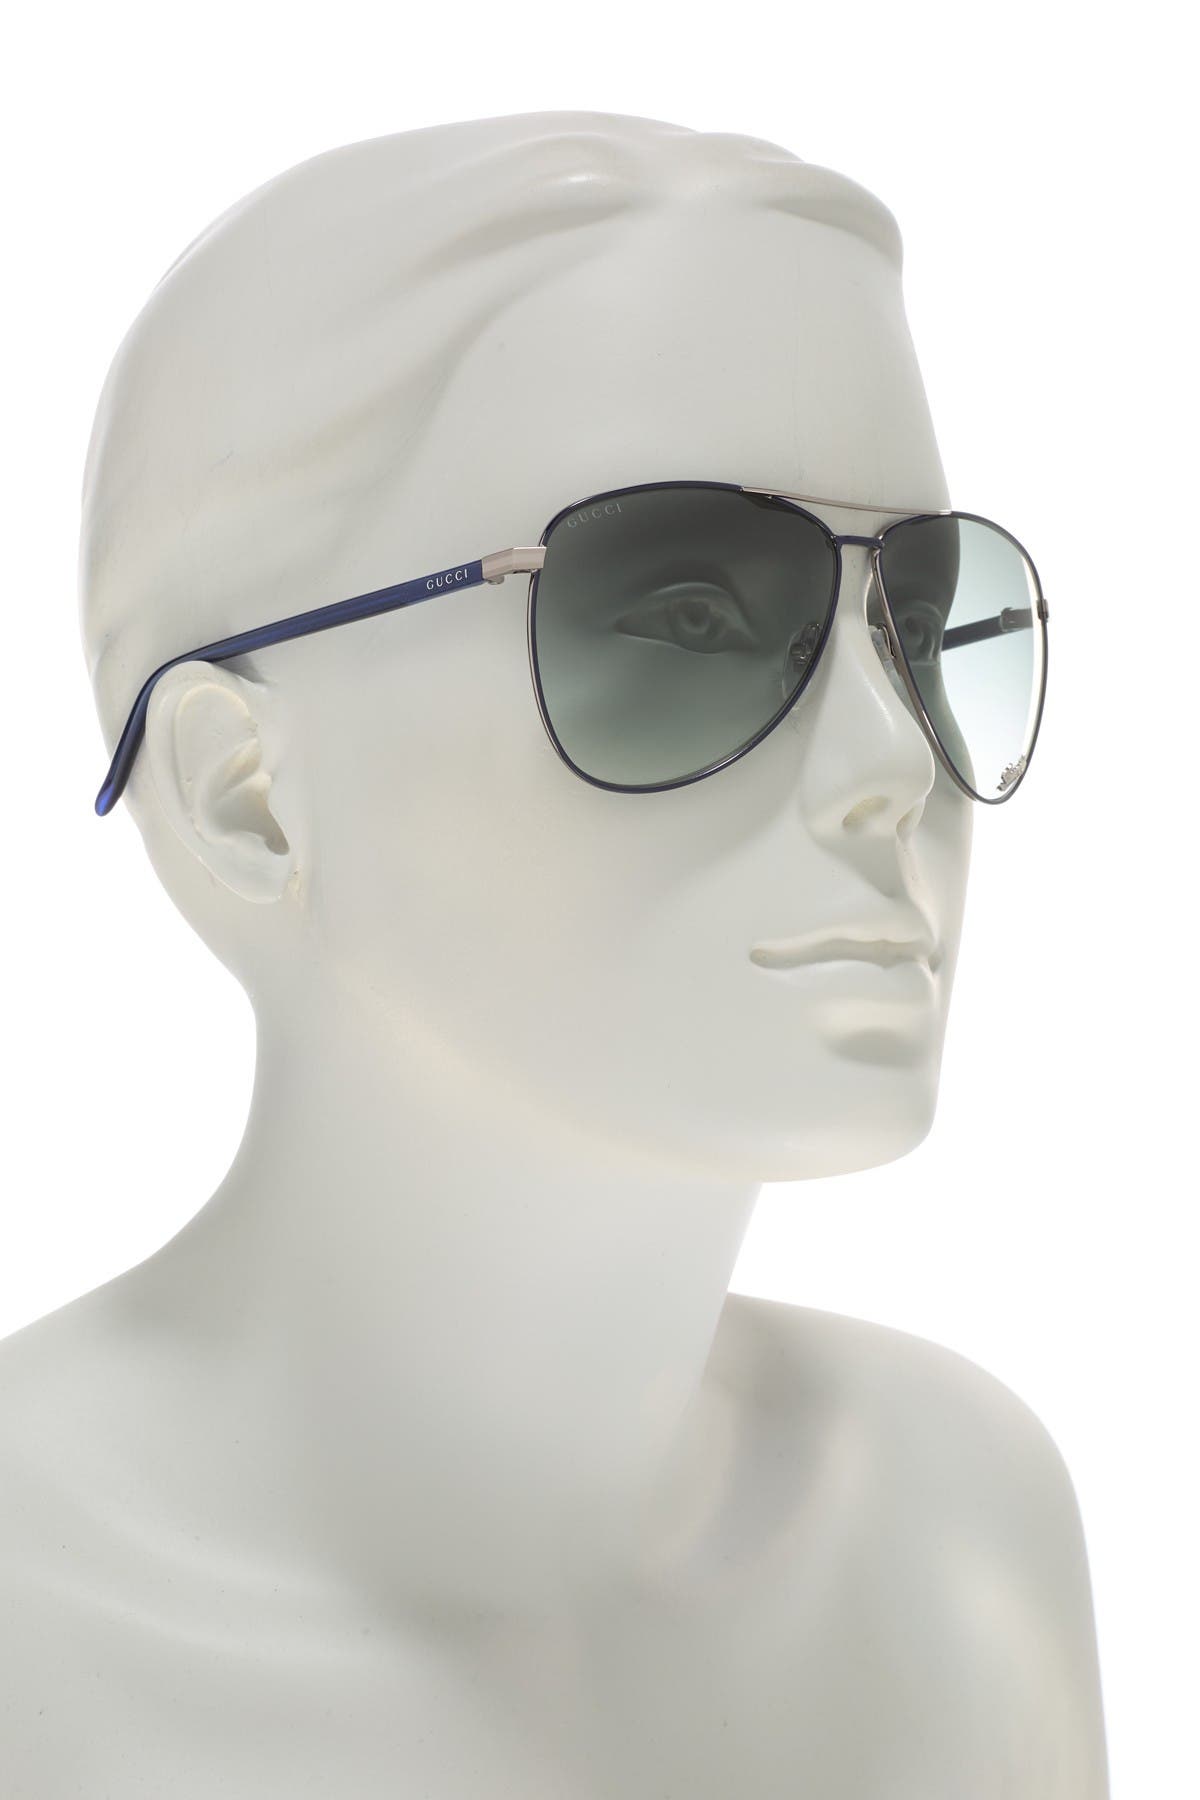 gucci sunglasses gg0502s